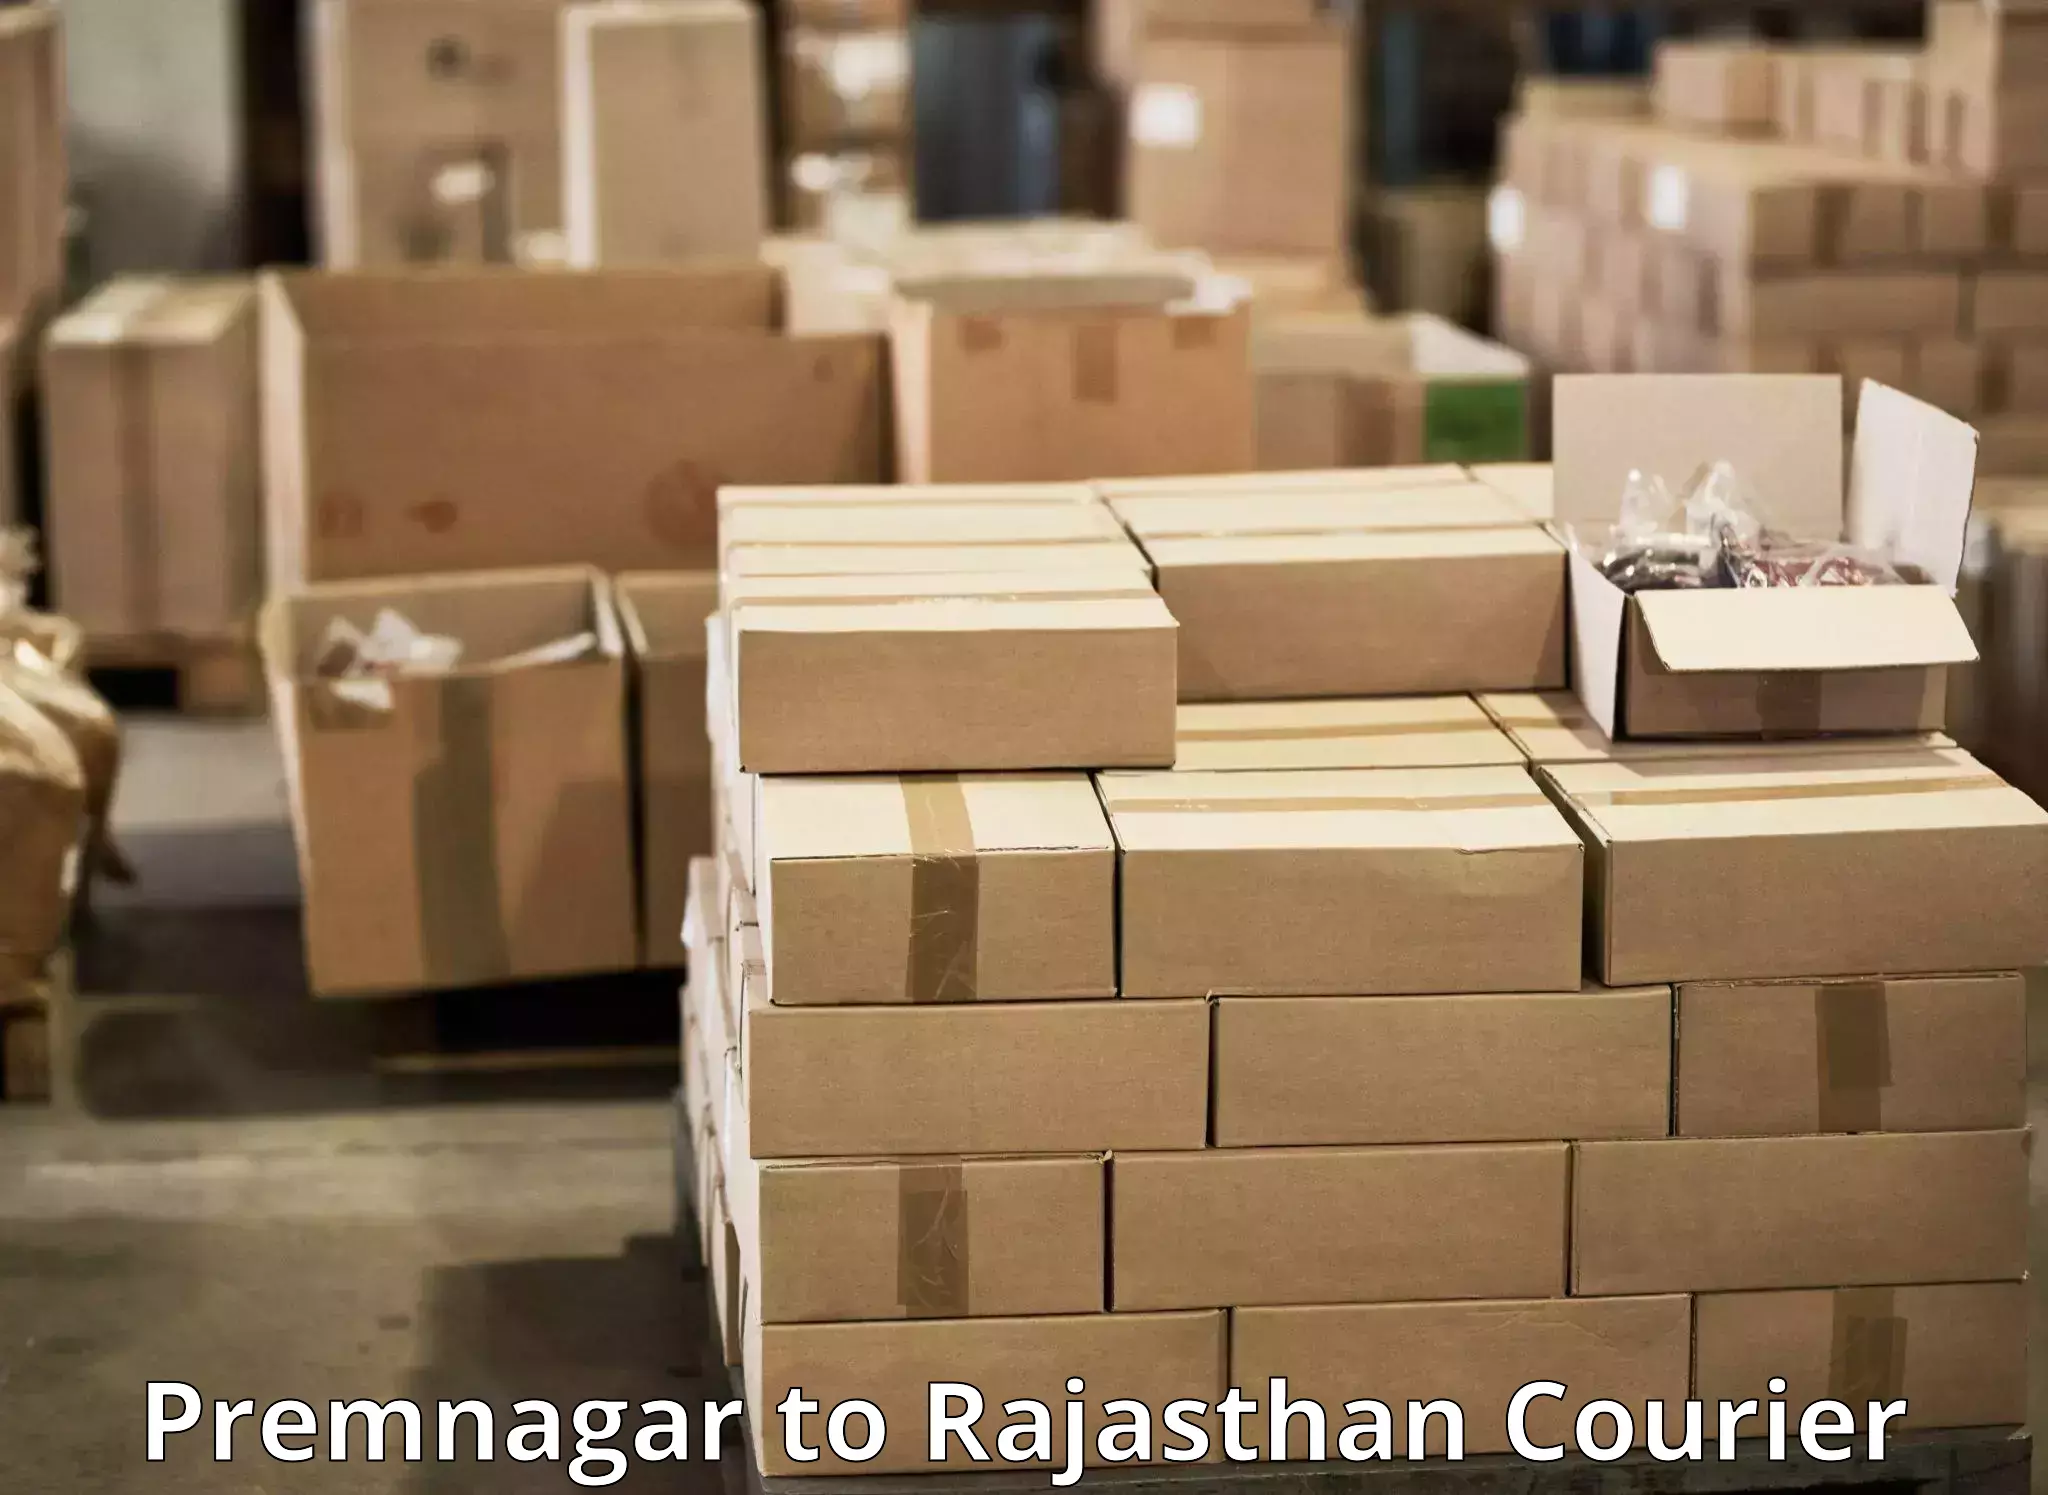 Quick parcel dispatch Premnagar to Viratnagar